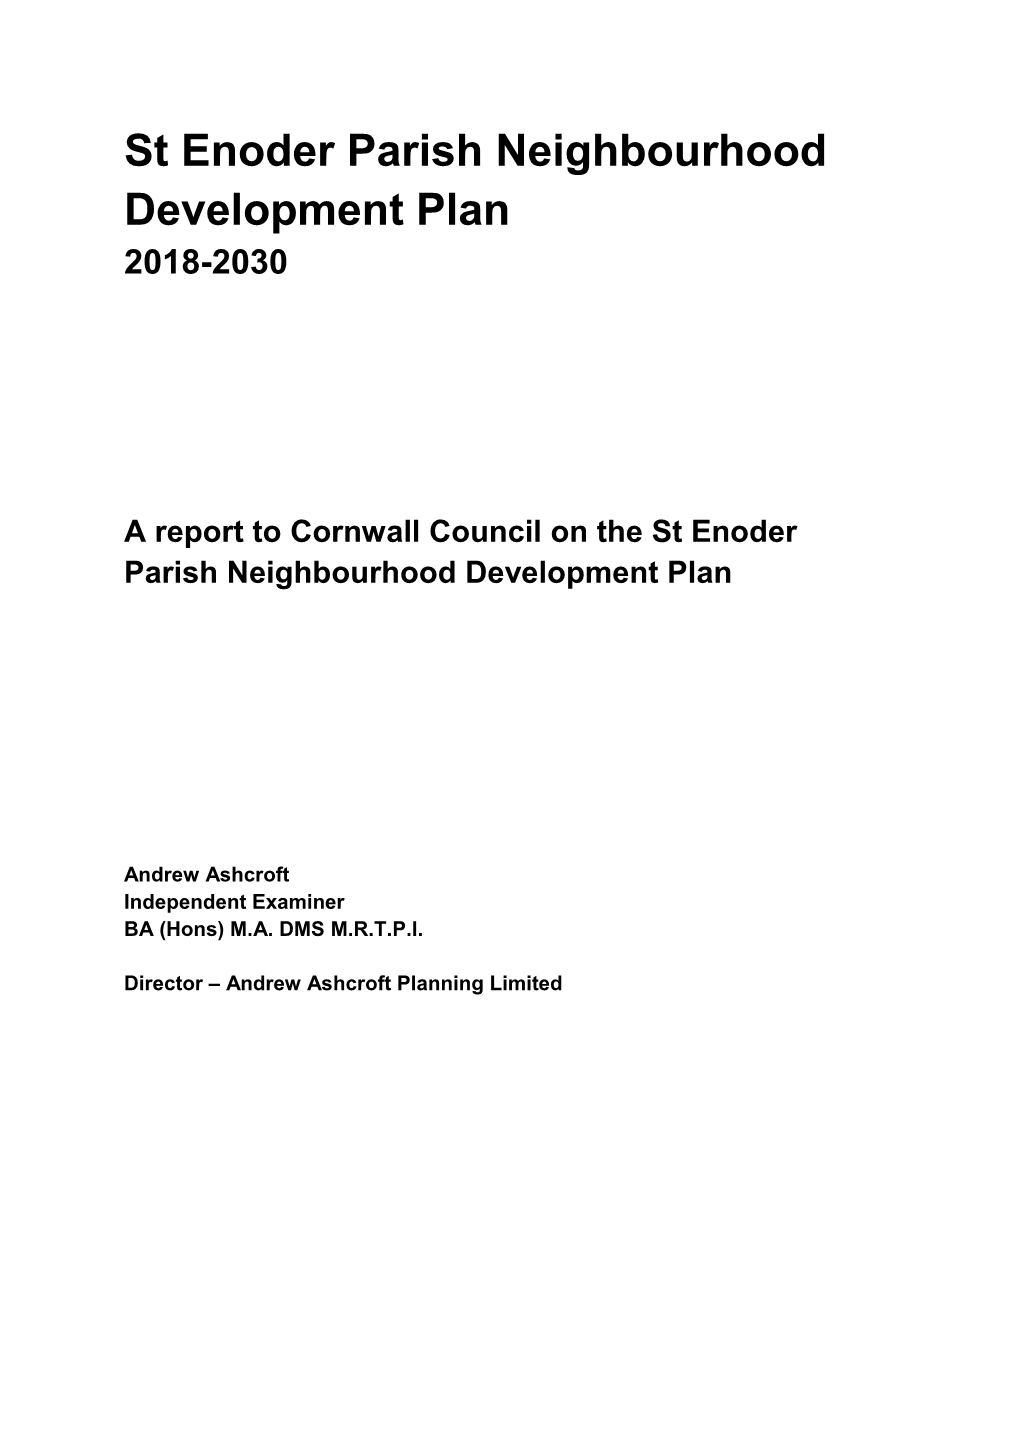 St Enoder Parish Neighbourhood Development Plan 2018-2030